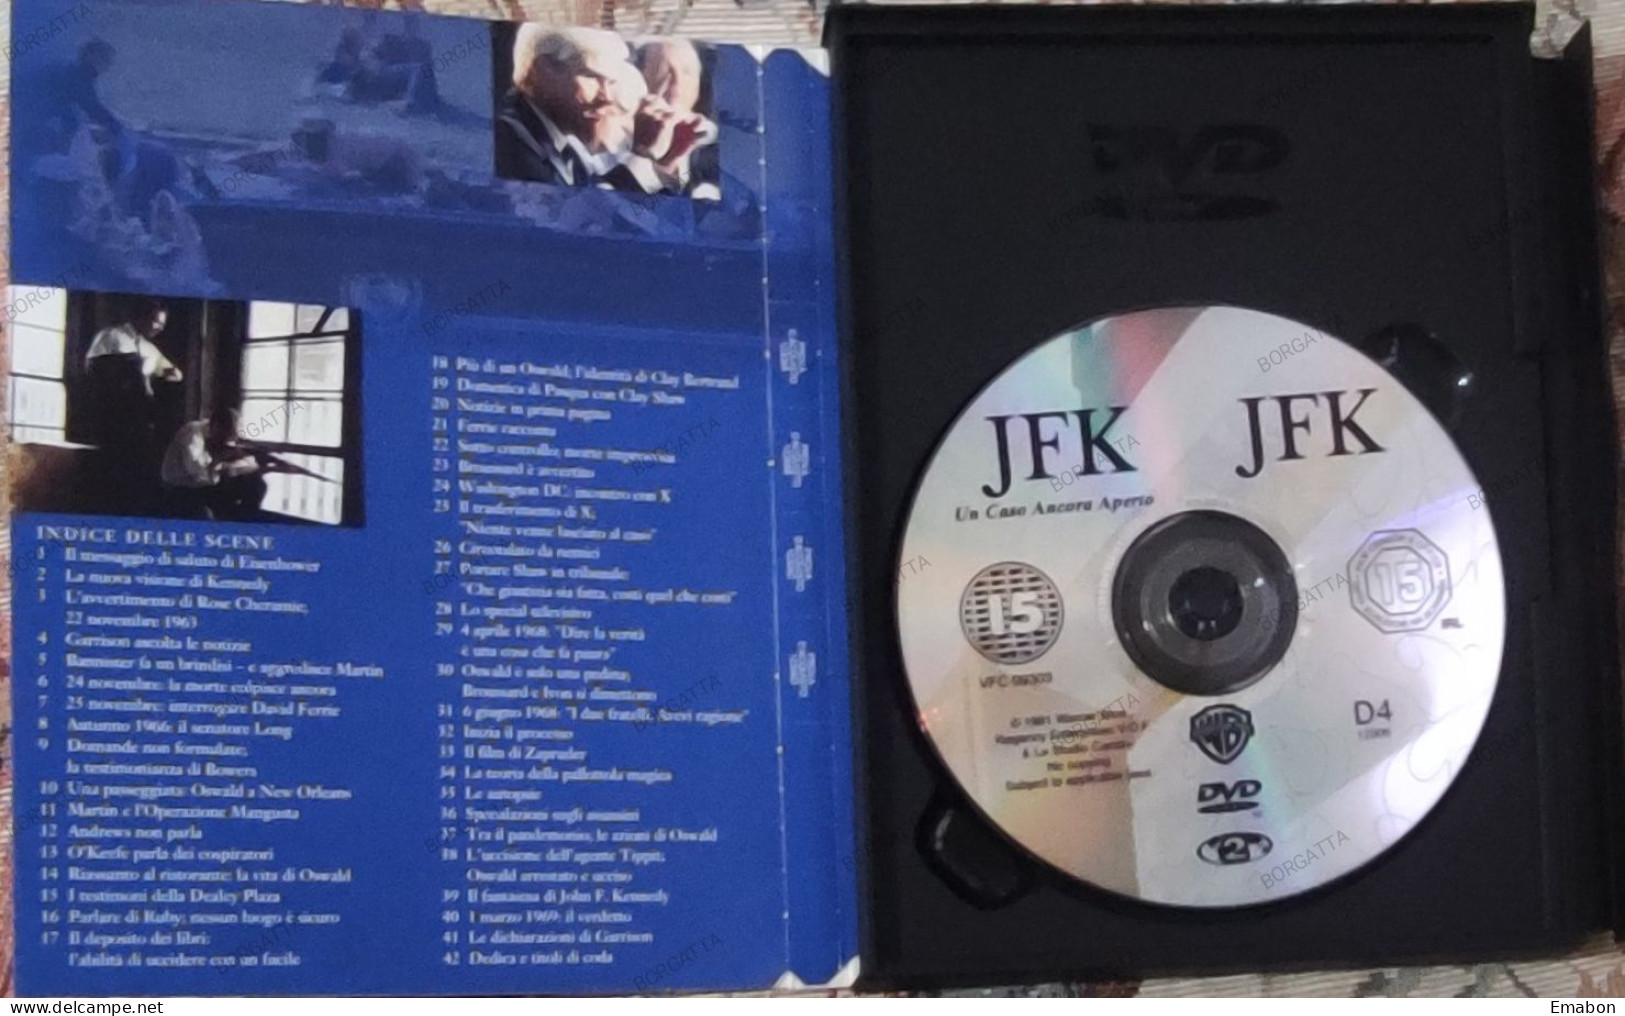 BORGATTA - DRAMMA - Dvd  " JFK UN CASO ANCORA APERTO " KEVIN KOSTNER - PAL 2 - WARNER  1999-  USATO In Buono Stato - Drama